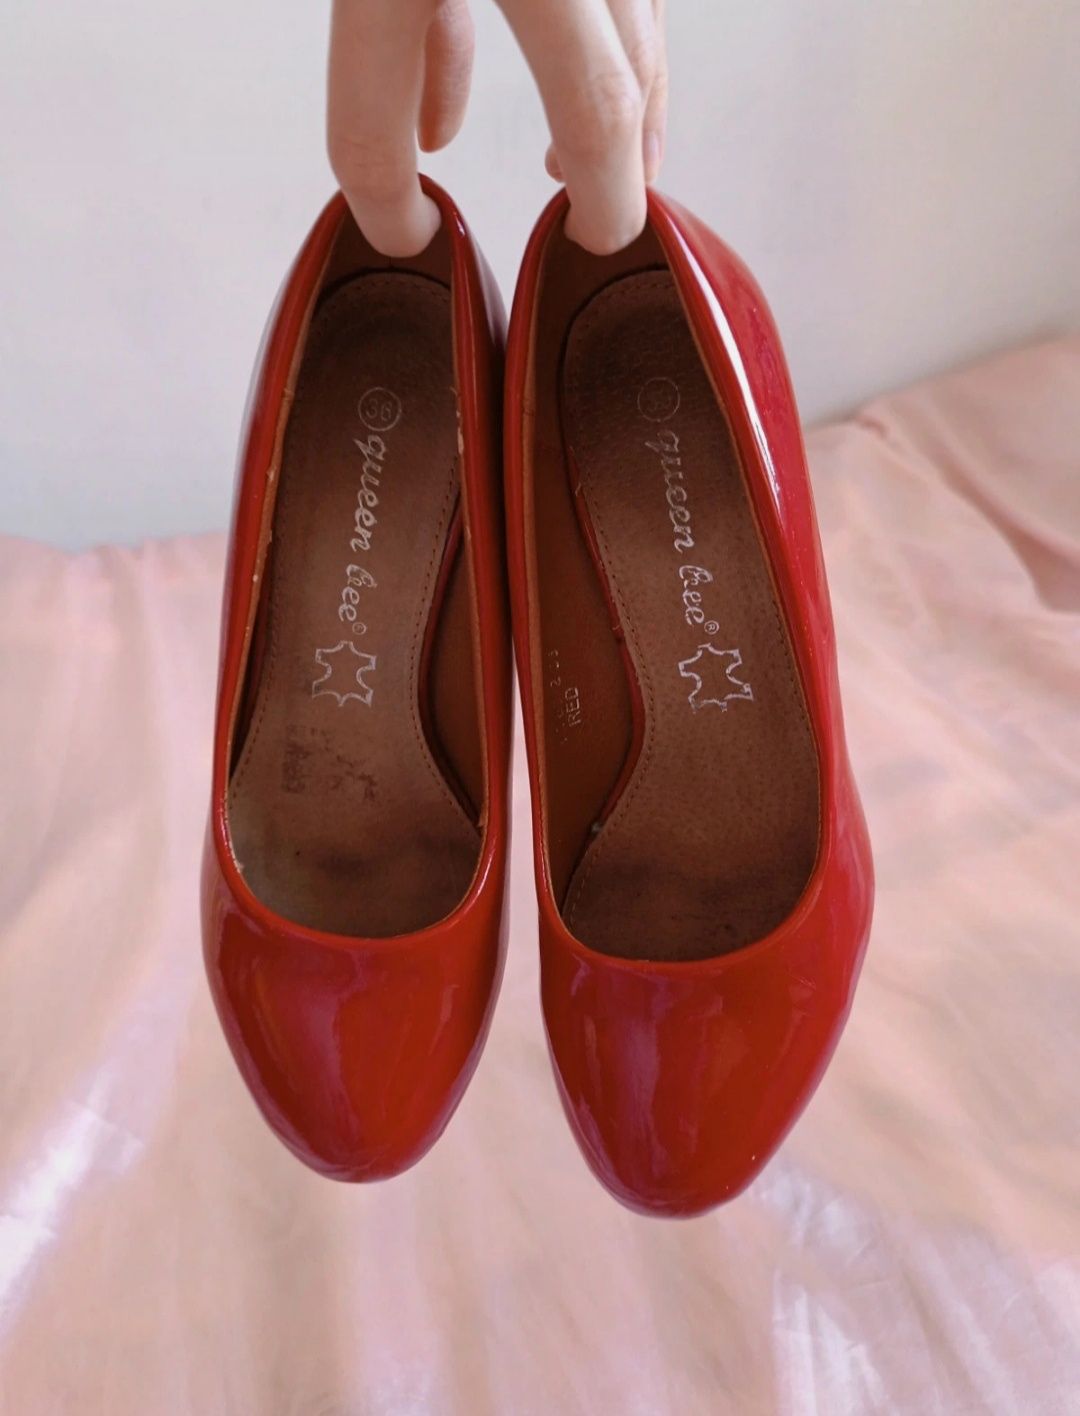 Buty na obcasach lakierowane czerwone